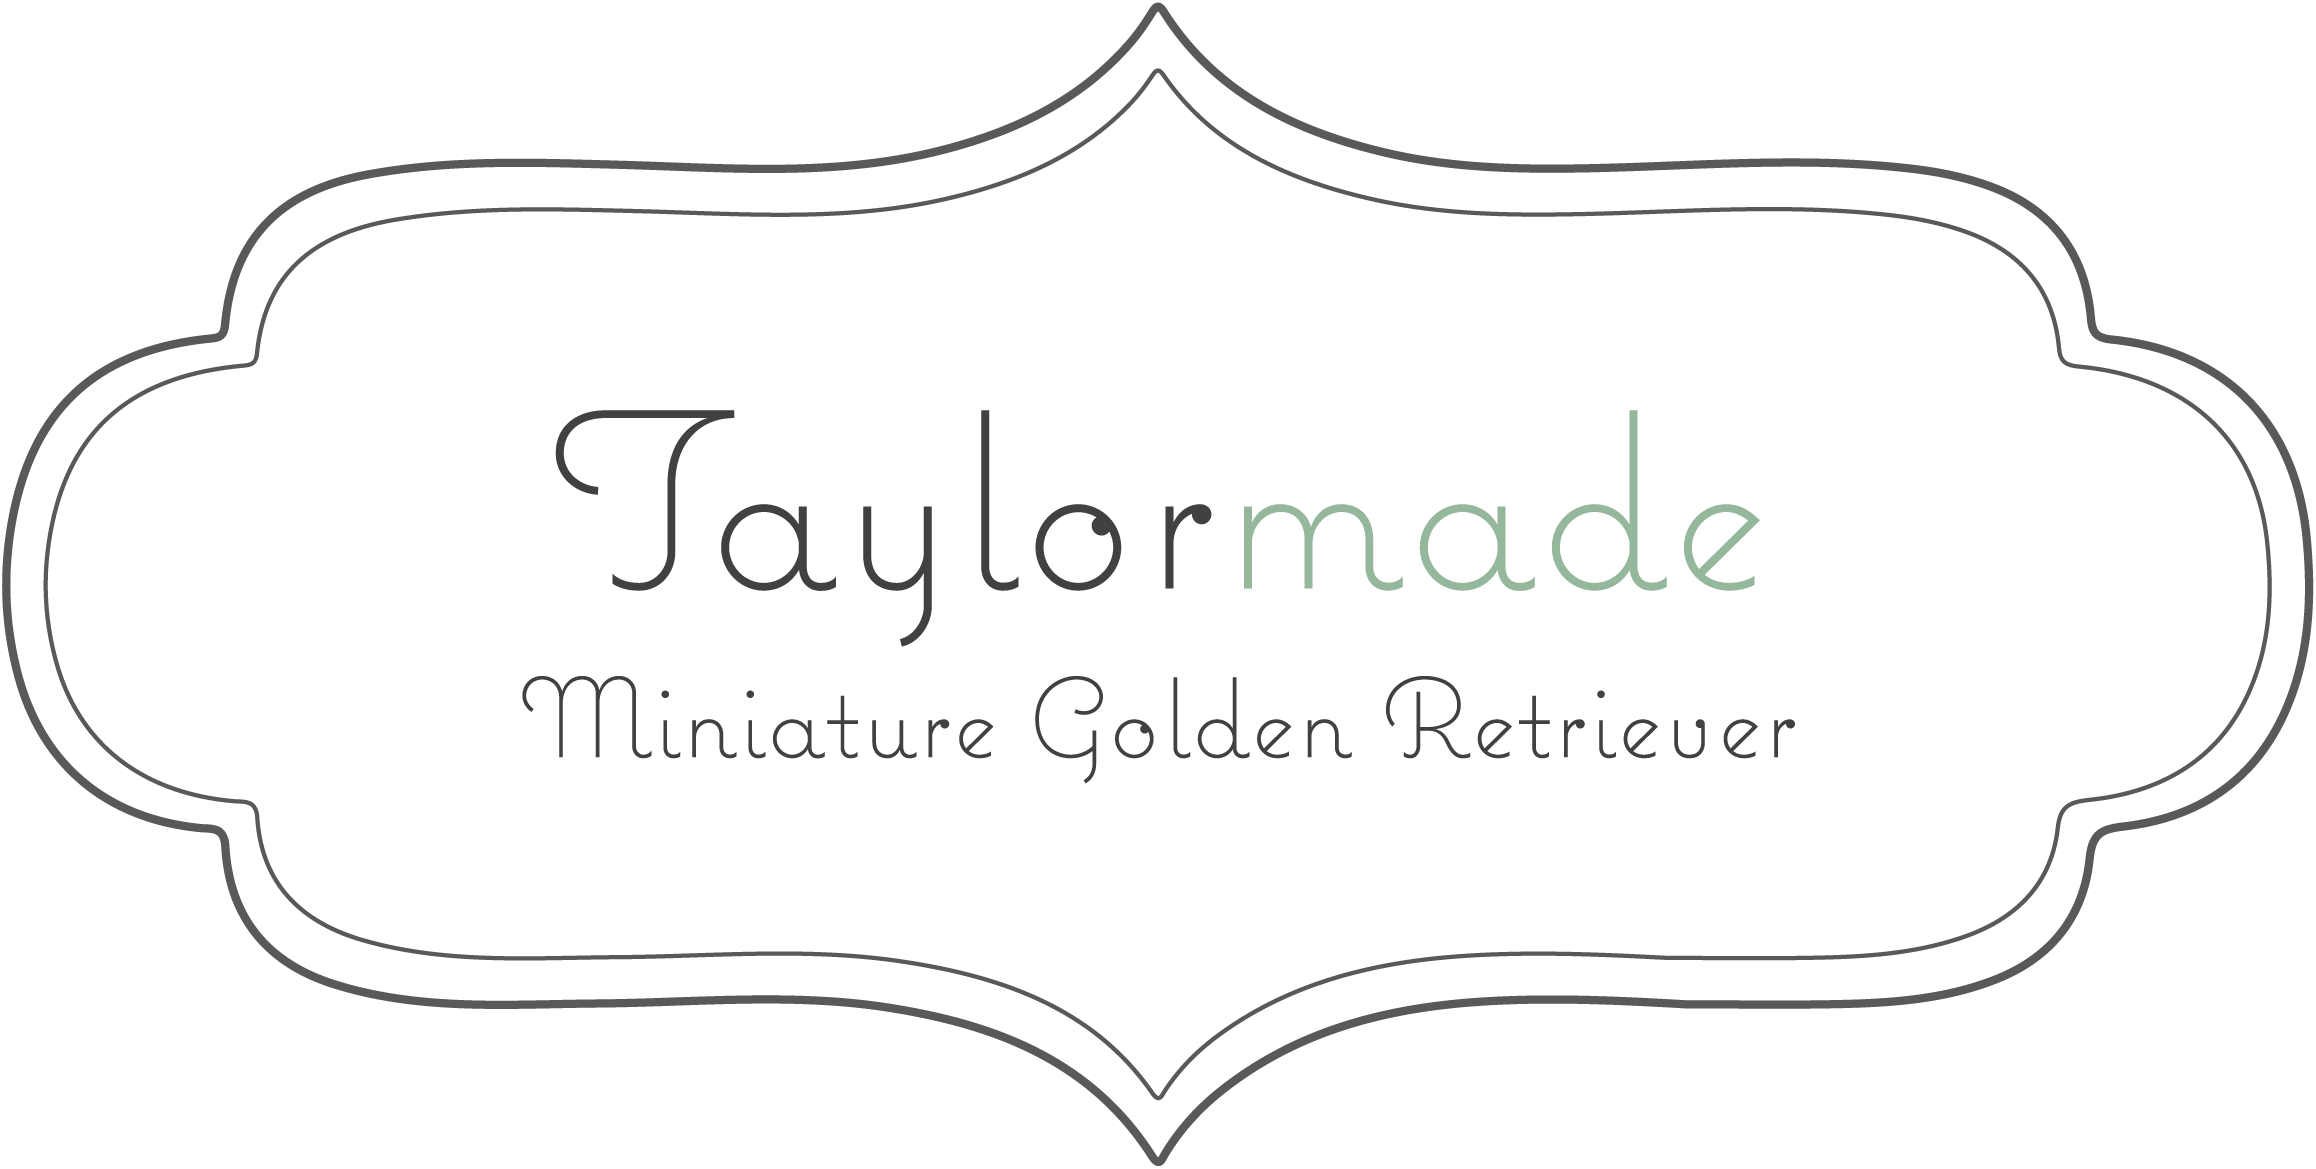 Taylormade Miniature Golden Retriever